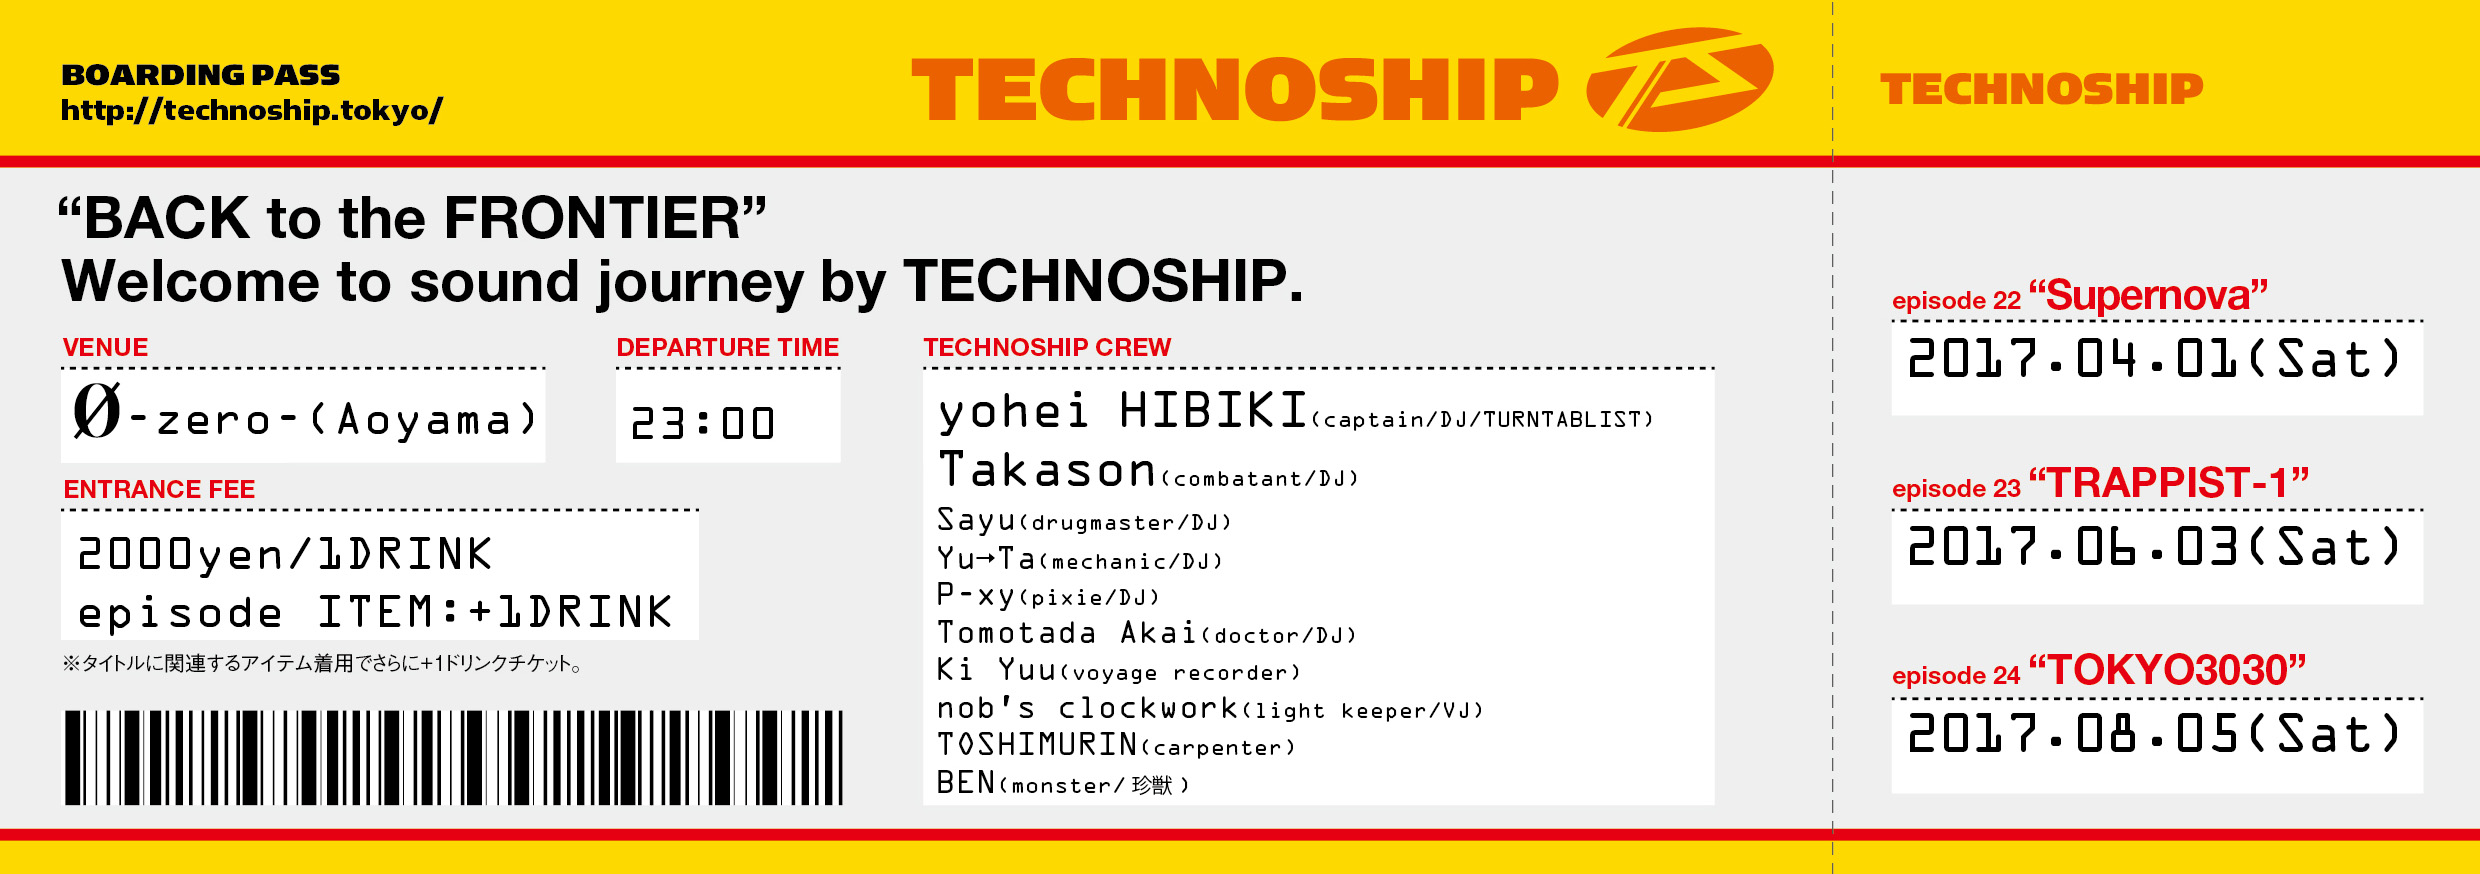 TECHNOSHIP episode24 “TOKYO3030”